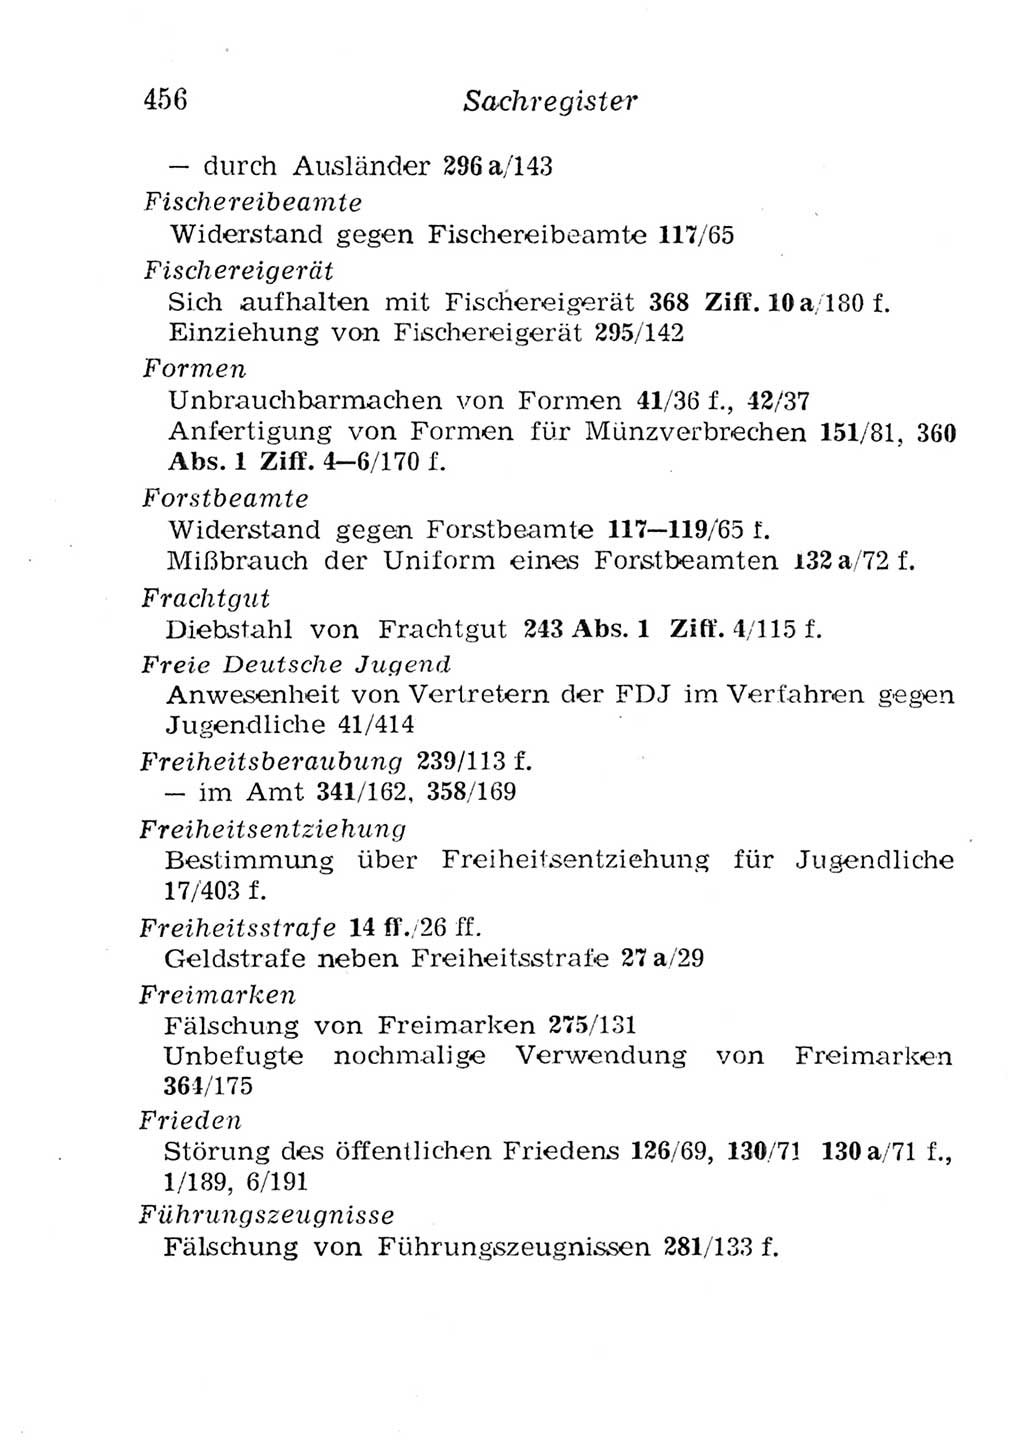 Strafgesetzbuch (StGB) und andere Strafgesetze [Deutsche Demokratische Republik (DDR)] 1957, Seite 456 (StGB Strafges. DDR 1957, S. 456)